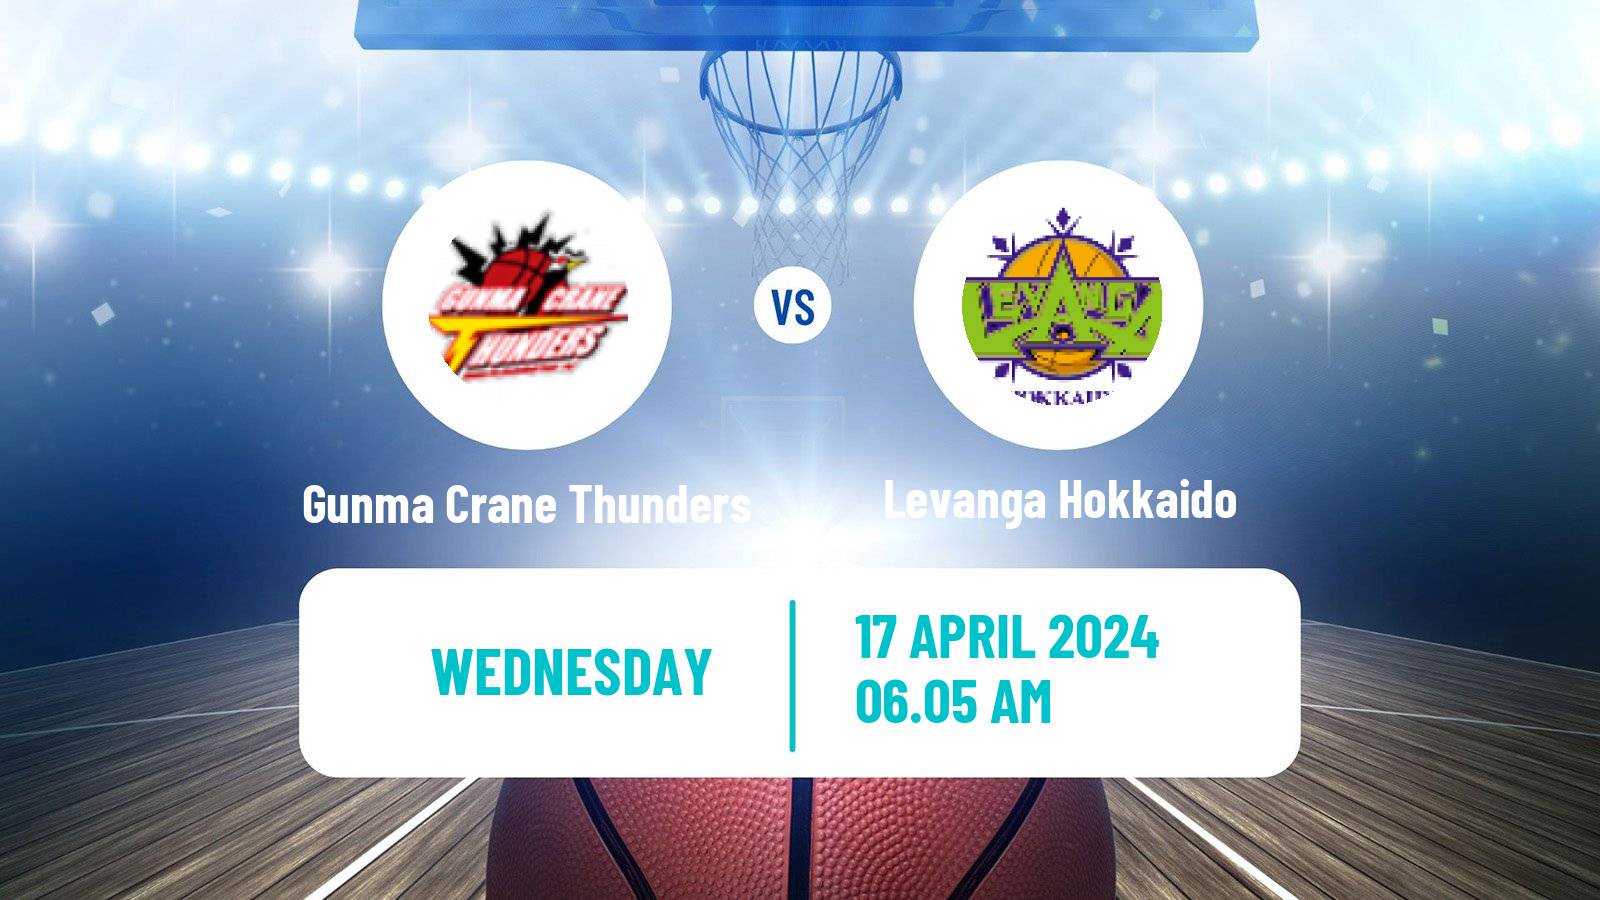 Basketball BJ League Gunma Crane Thunders - Levanga Hokkaido